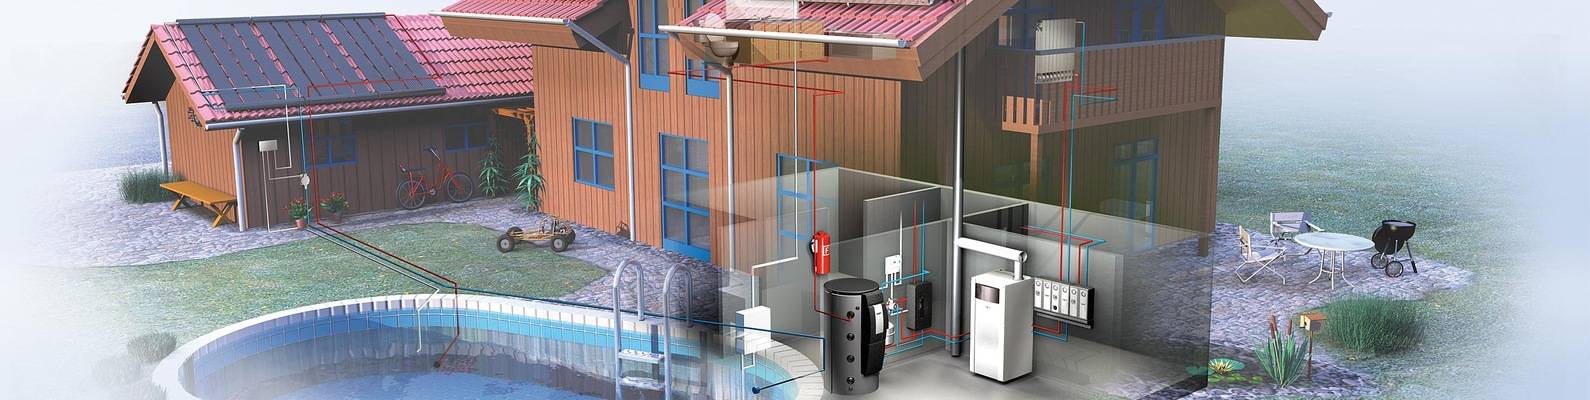 Отопление и водоснабжение частного дома схемы разводки и материалы